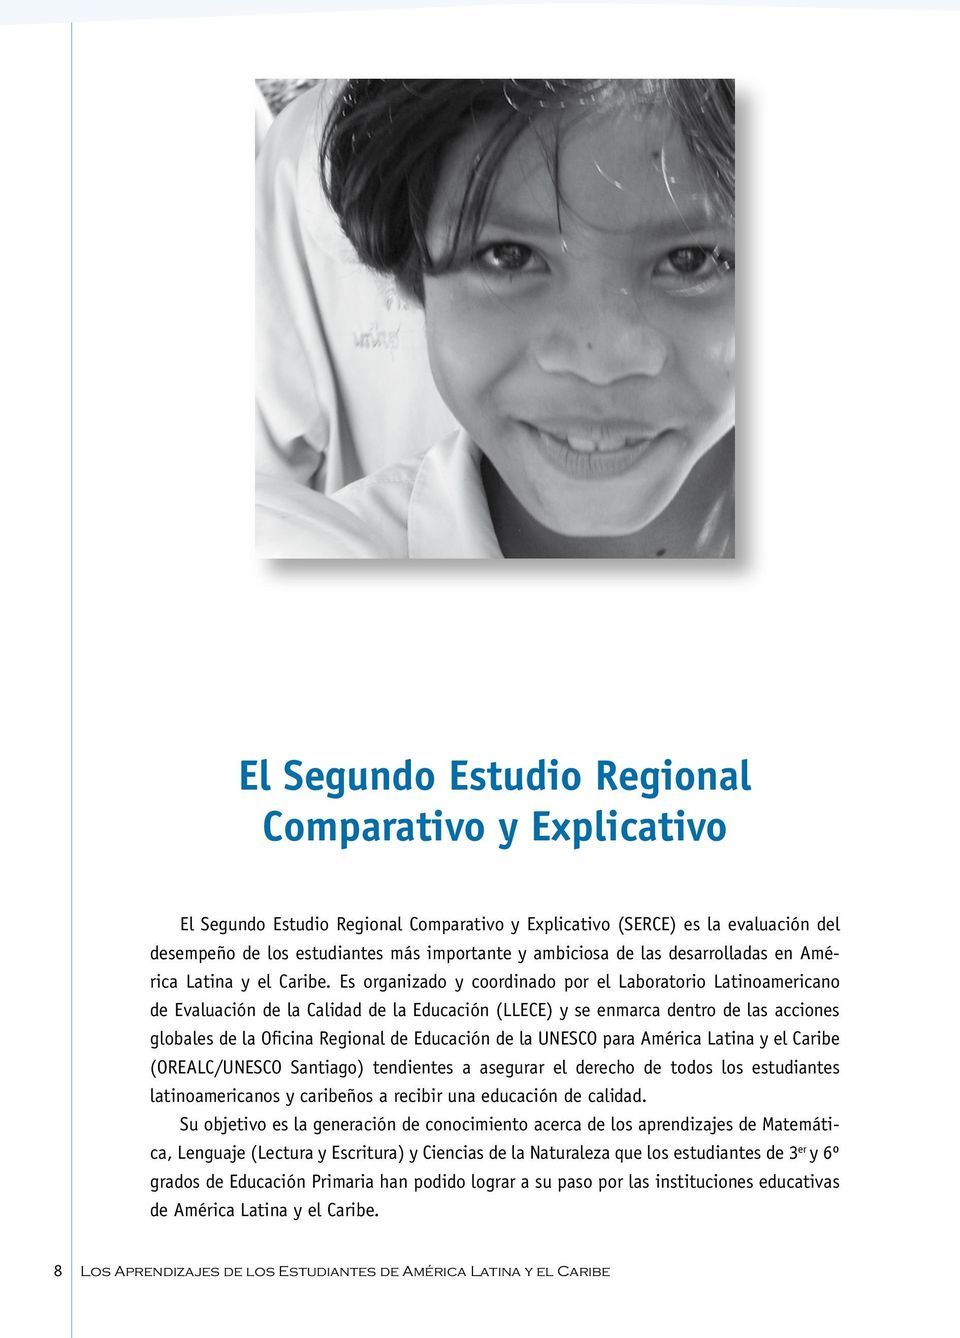 Es organizado y coordinado por el Laboratorio Latinoamericano de Evaluación de la Calidad de la Educación (LLECE) y se enmarca dentro de las acciones globales de la Oficina Regional de Educación de